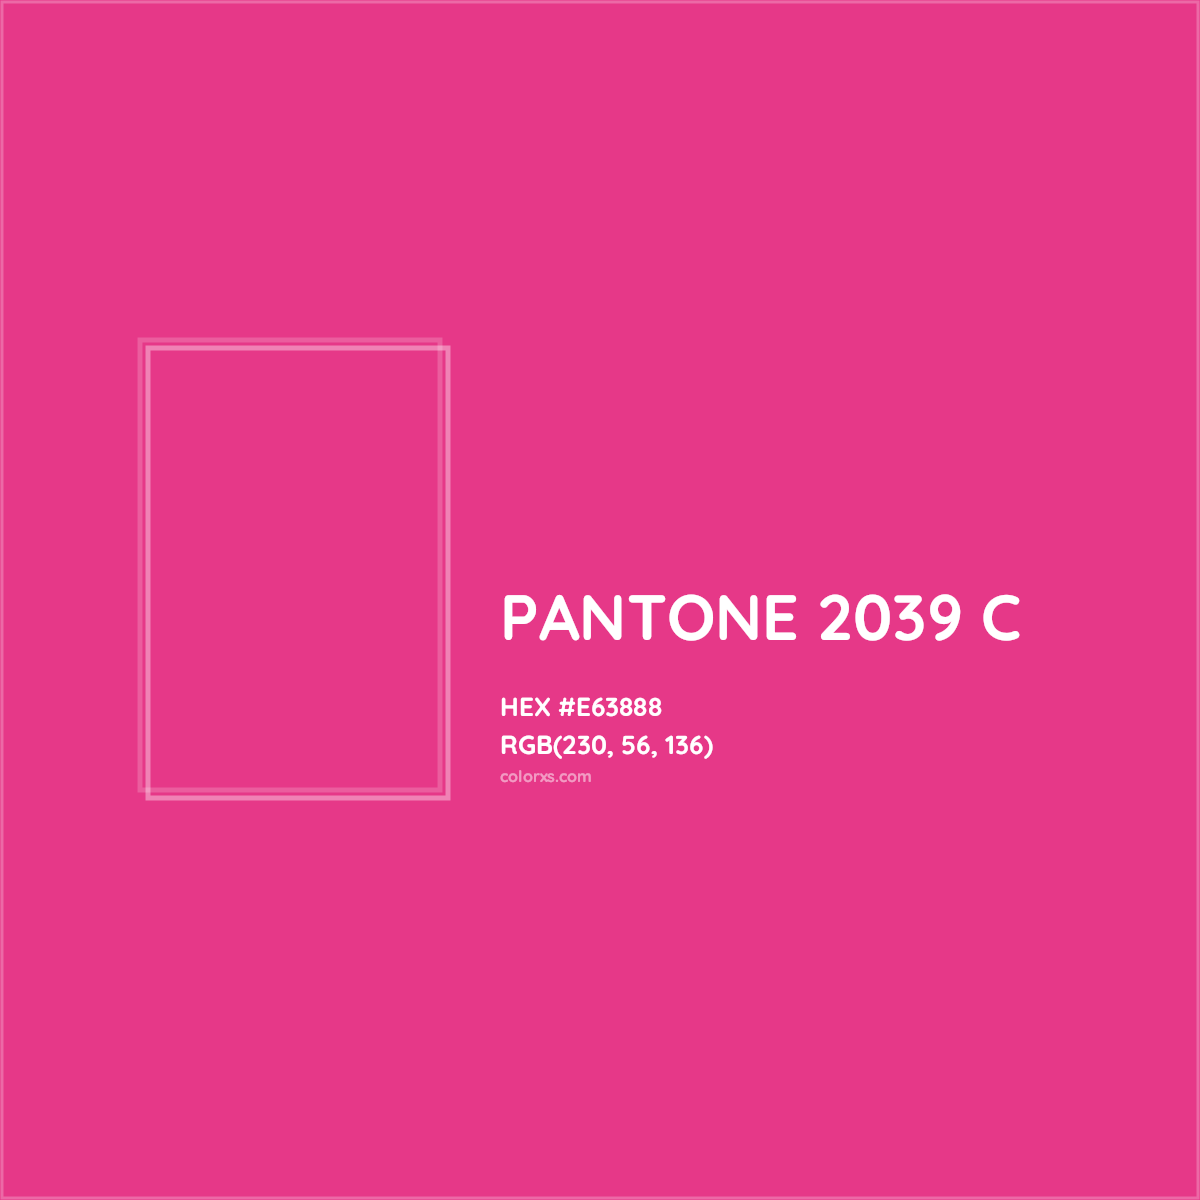 About PANTONE 2039 C Color Color codes, similar colors and paints